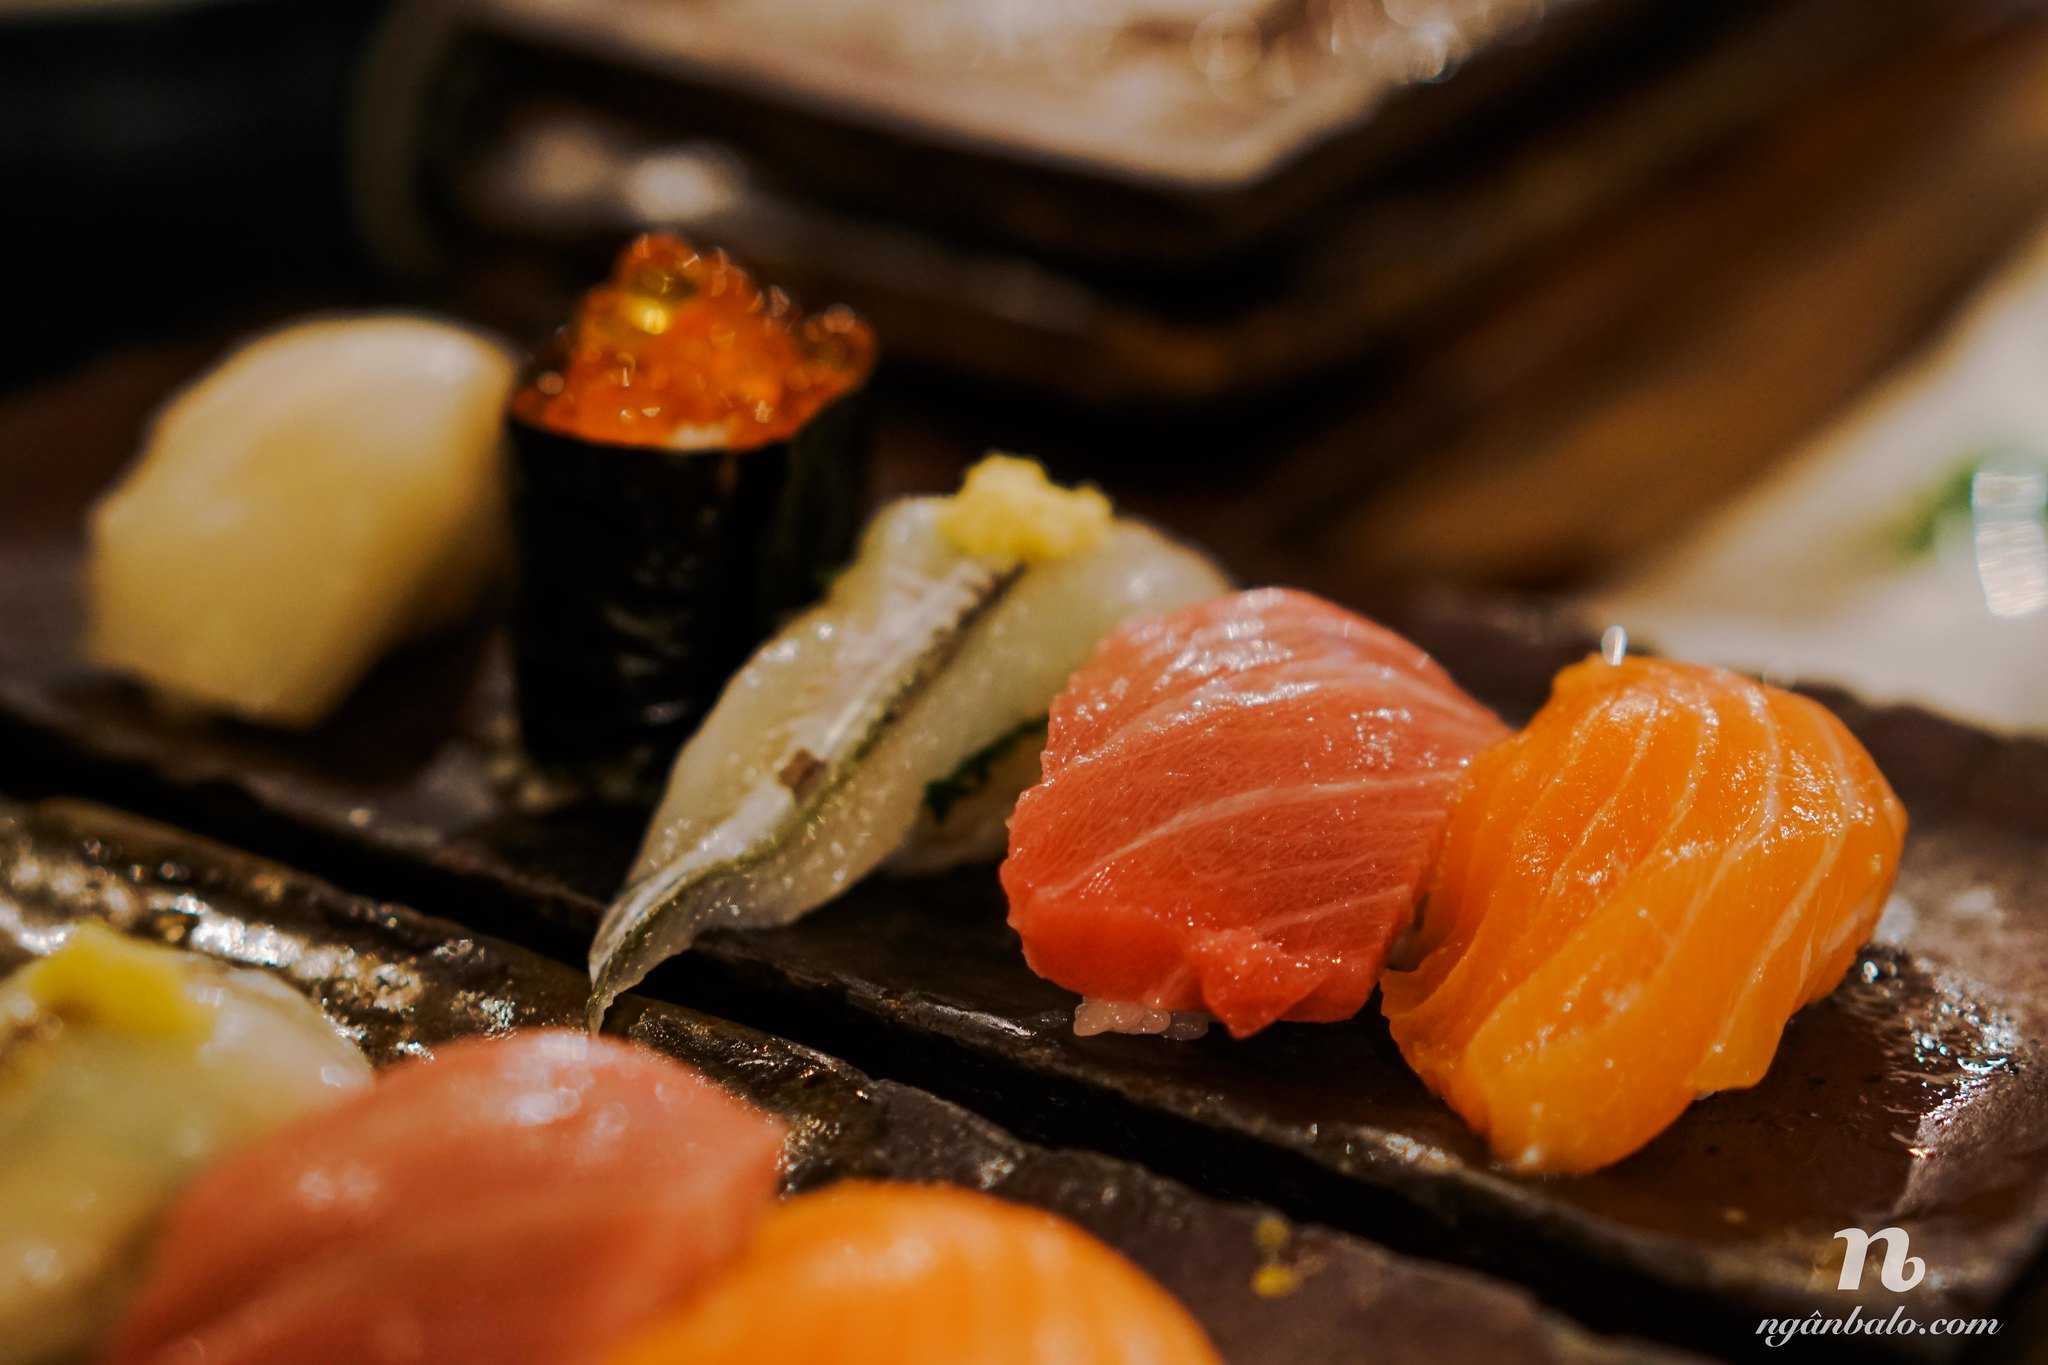 Du lịch bụi Nhật Bản (12): Thăm Chợ cá trung tâm Osaka và ăn sushi ở Endo Sushi